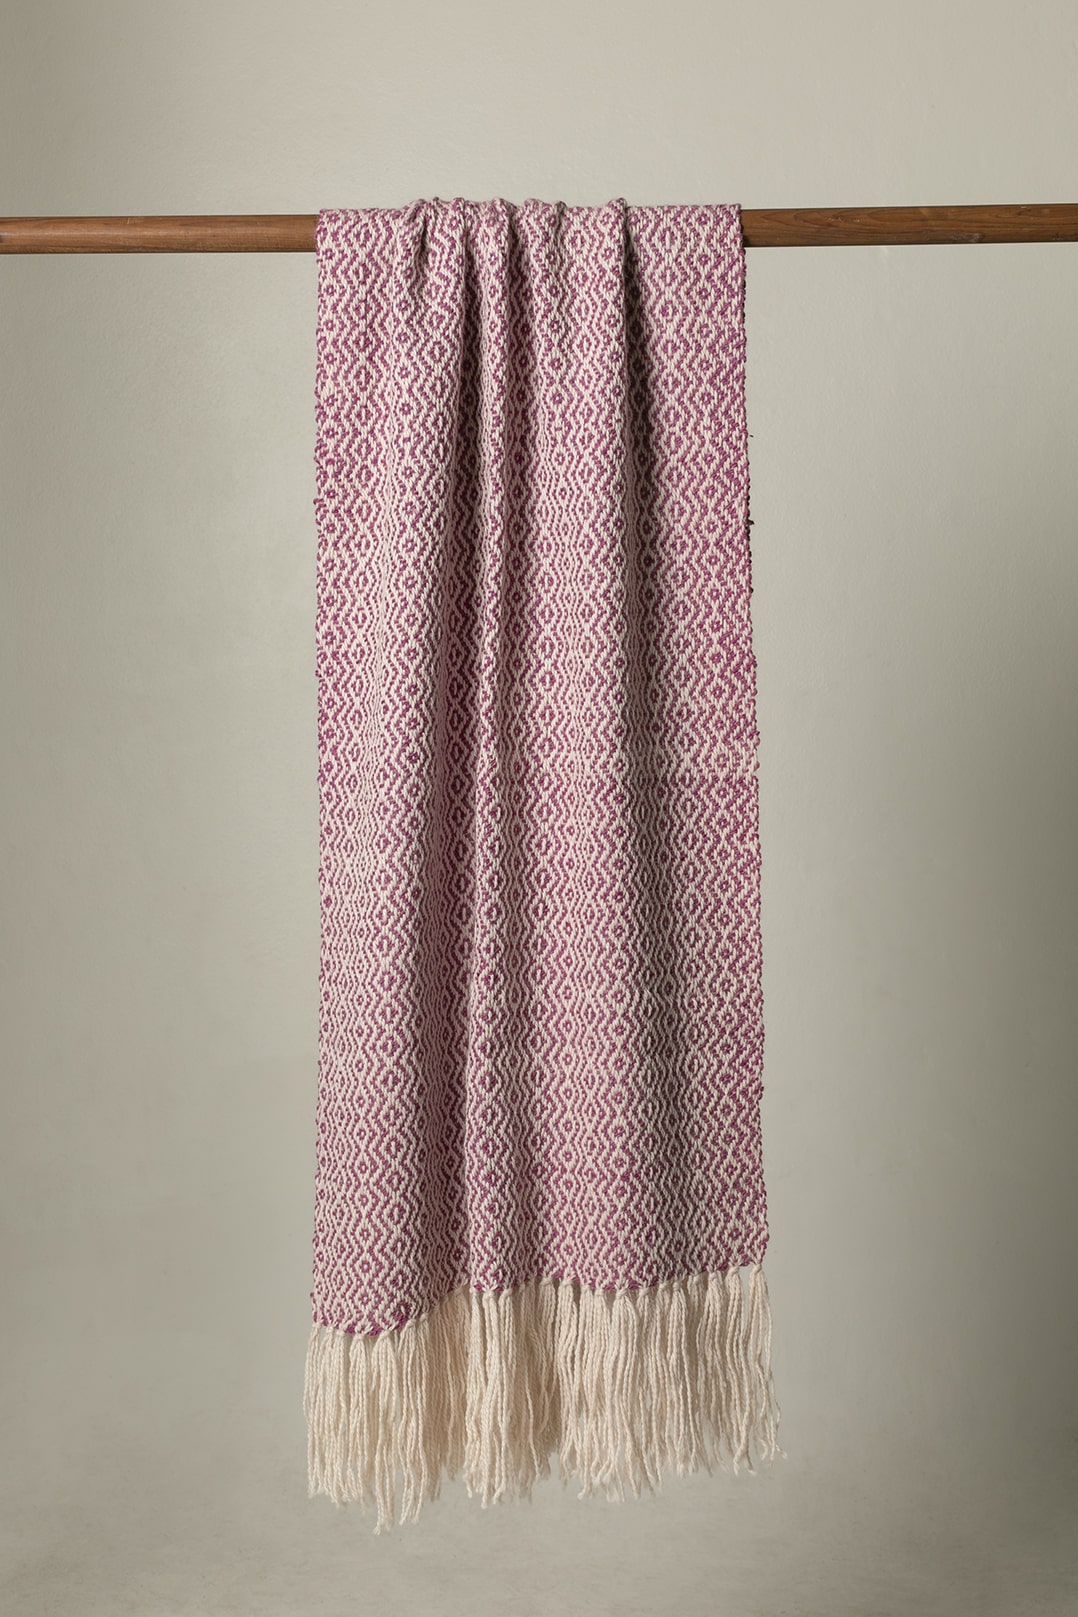 Llama wool scarf XL handwoven